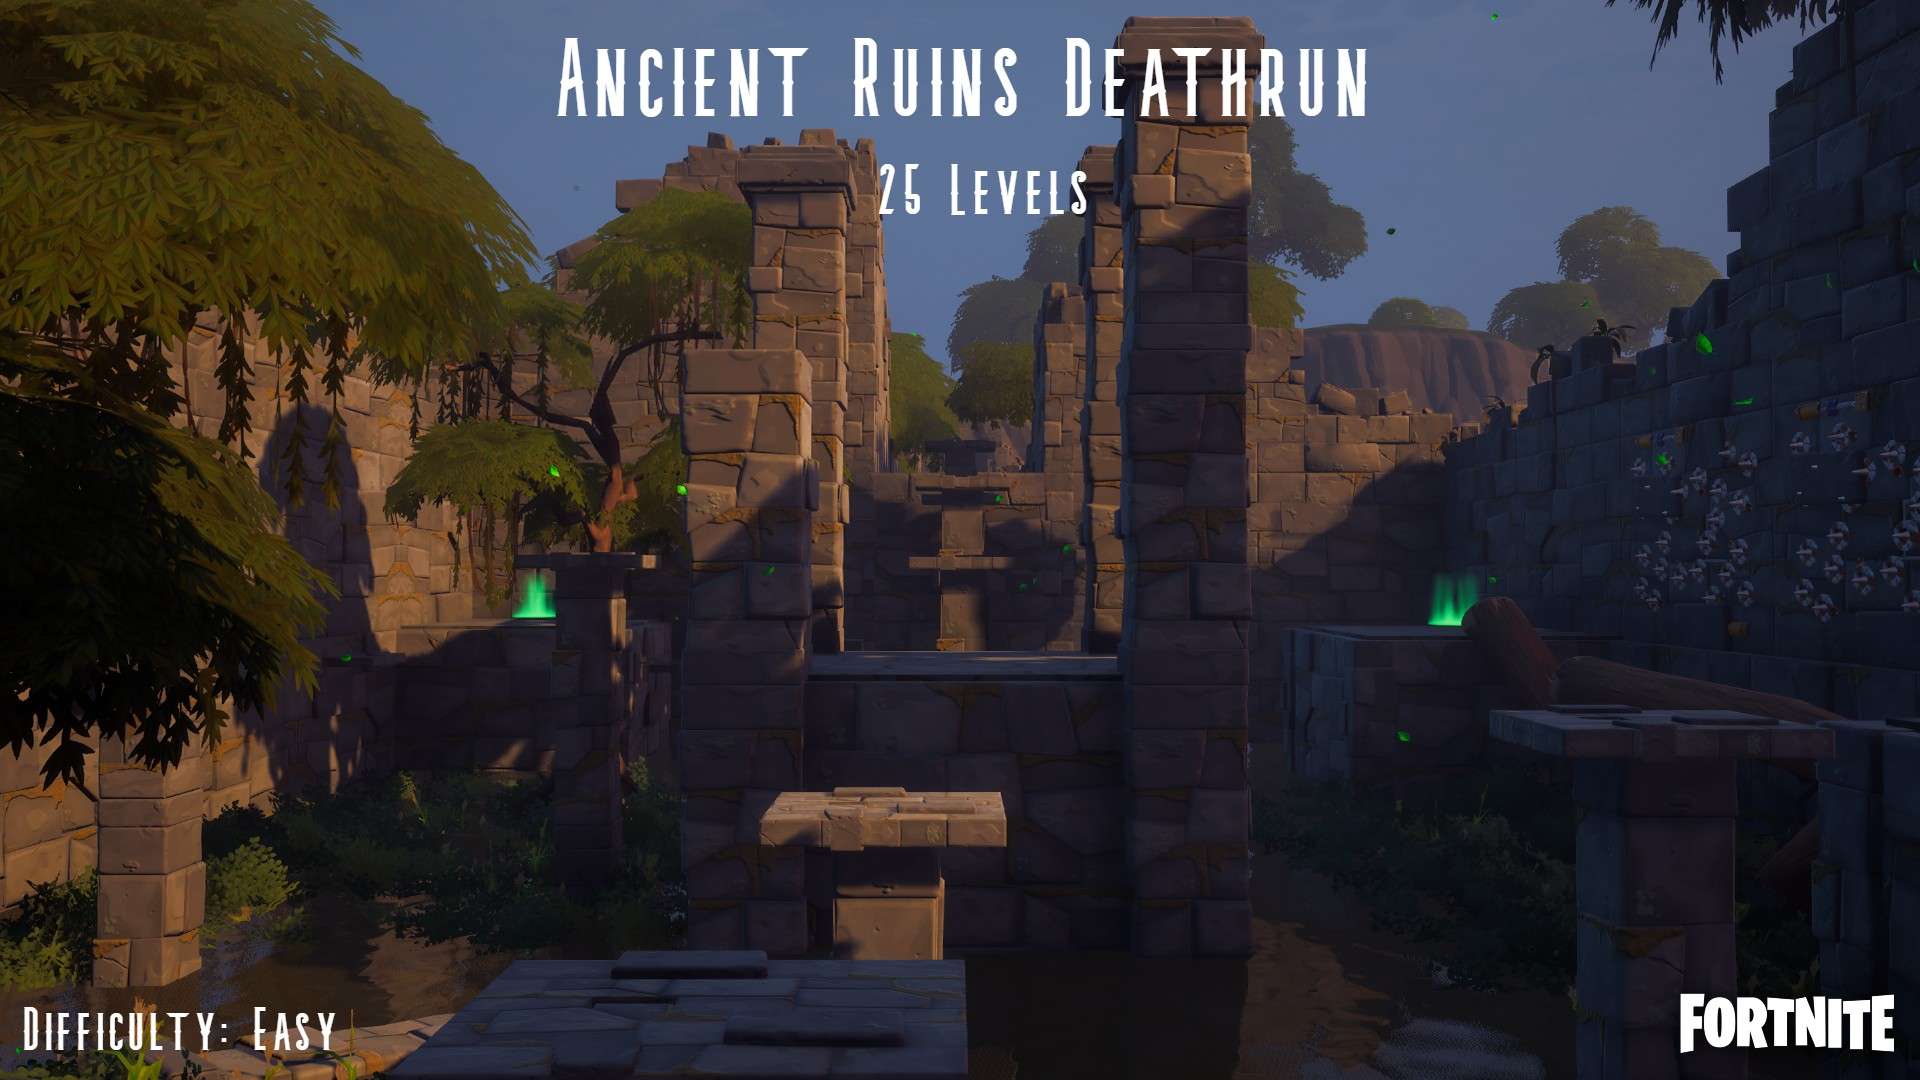 ANCIENT RUINS DEATHRUN